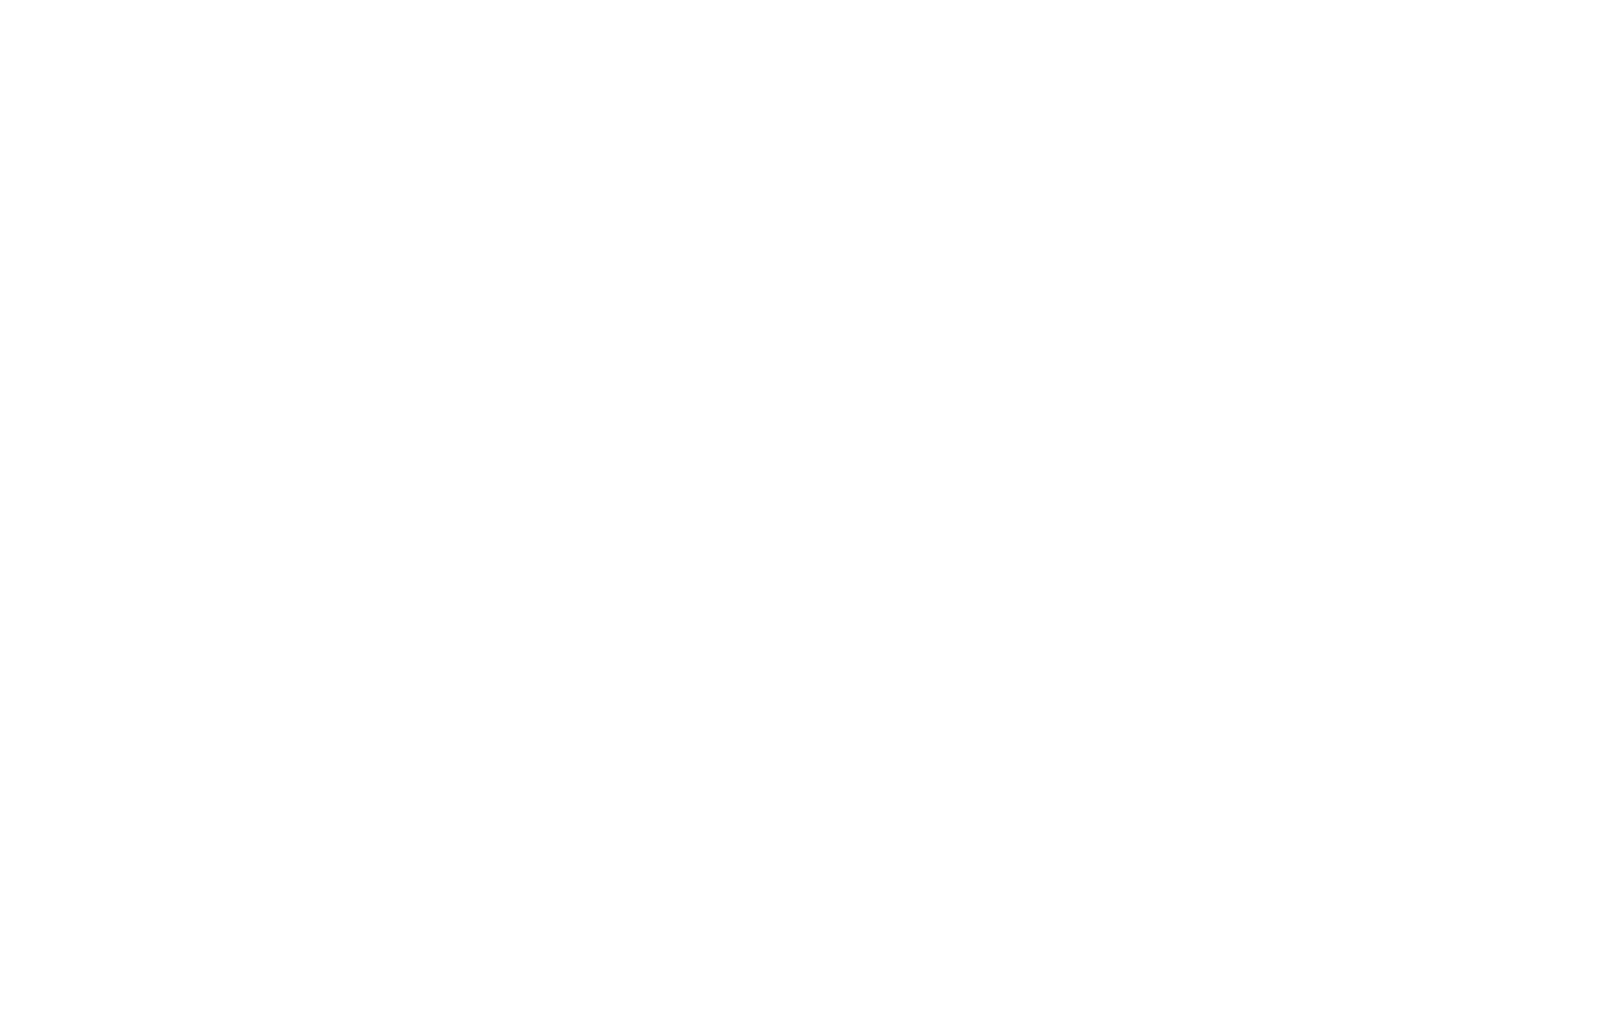 Natural Selections